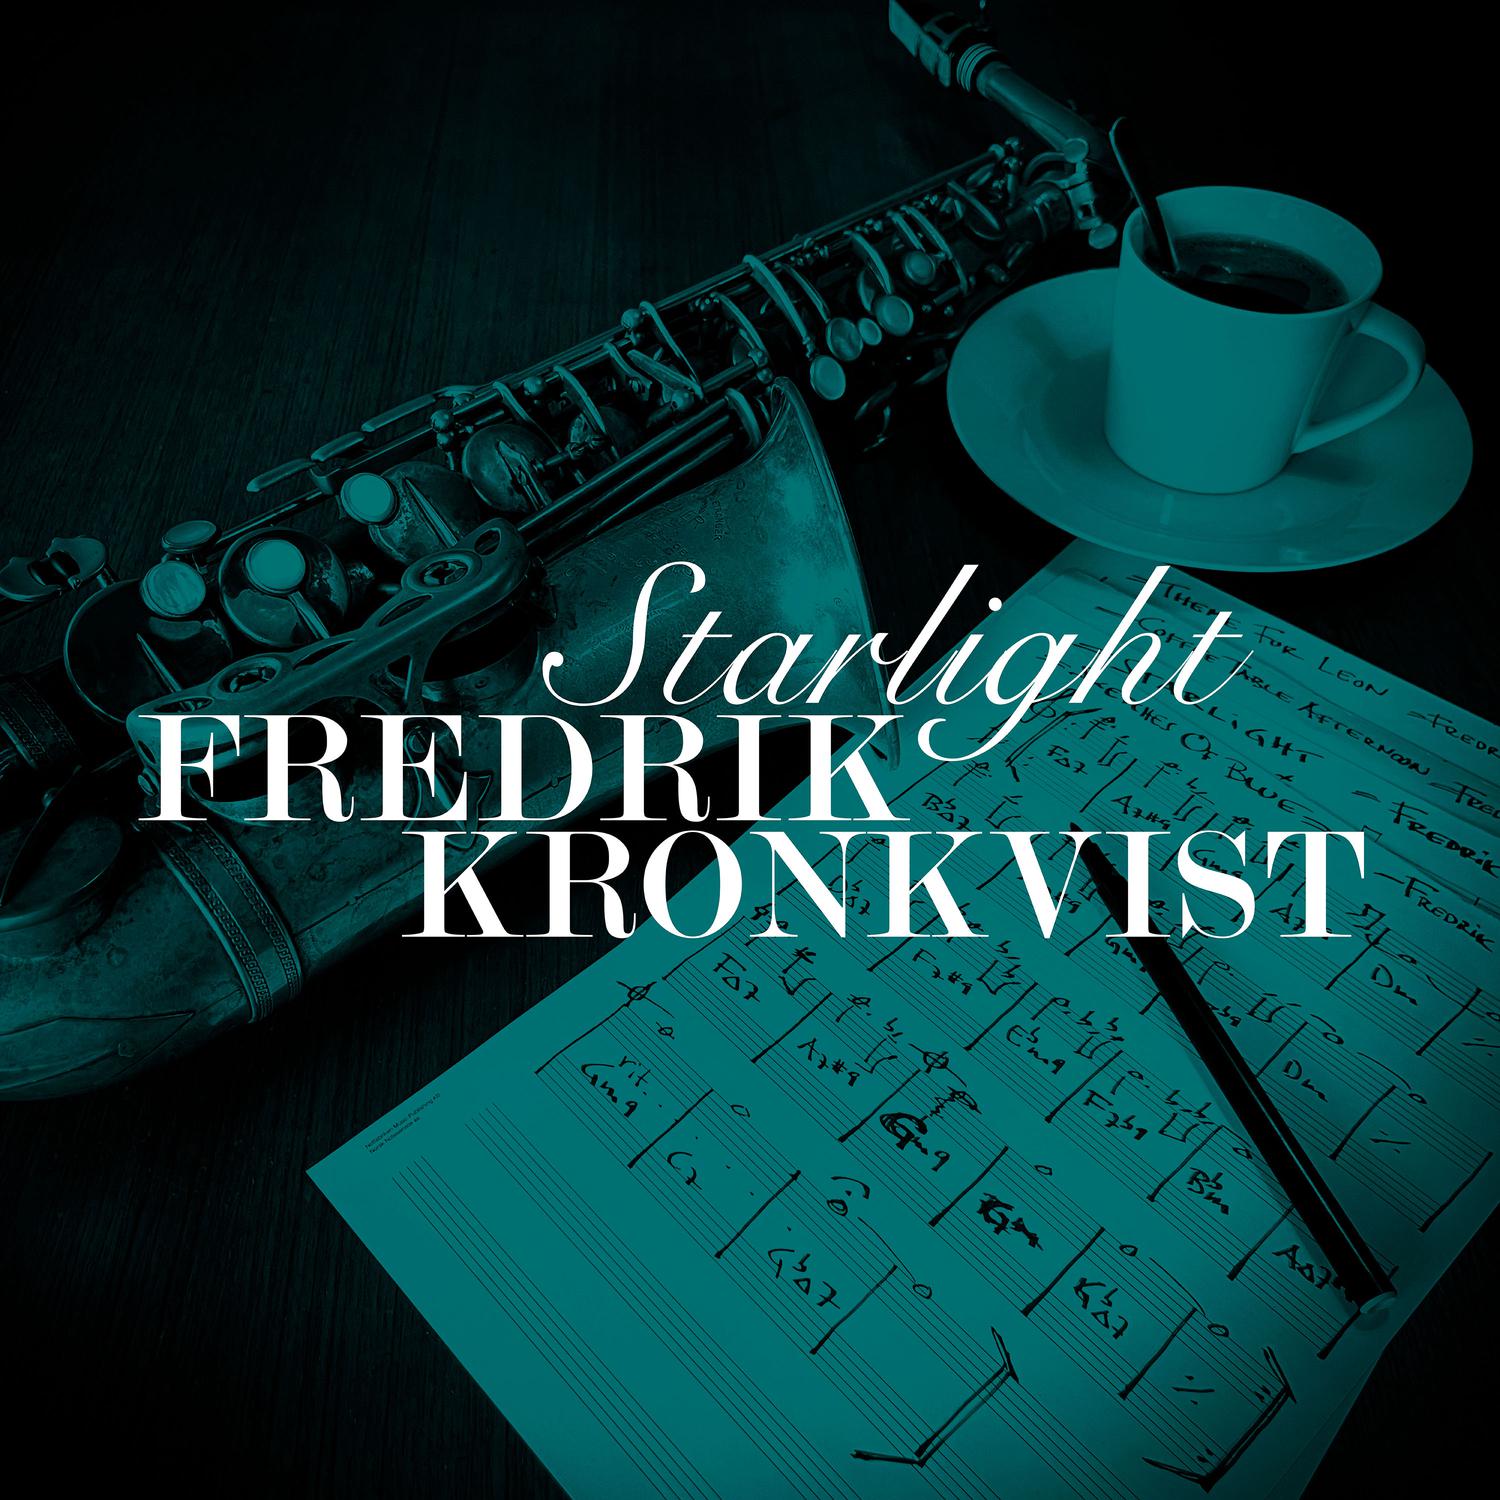 Fredrik Kronkvist - Starlight